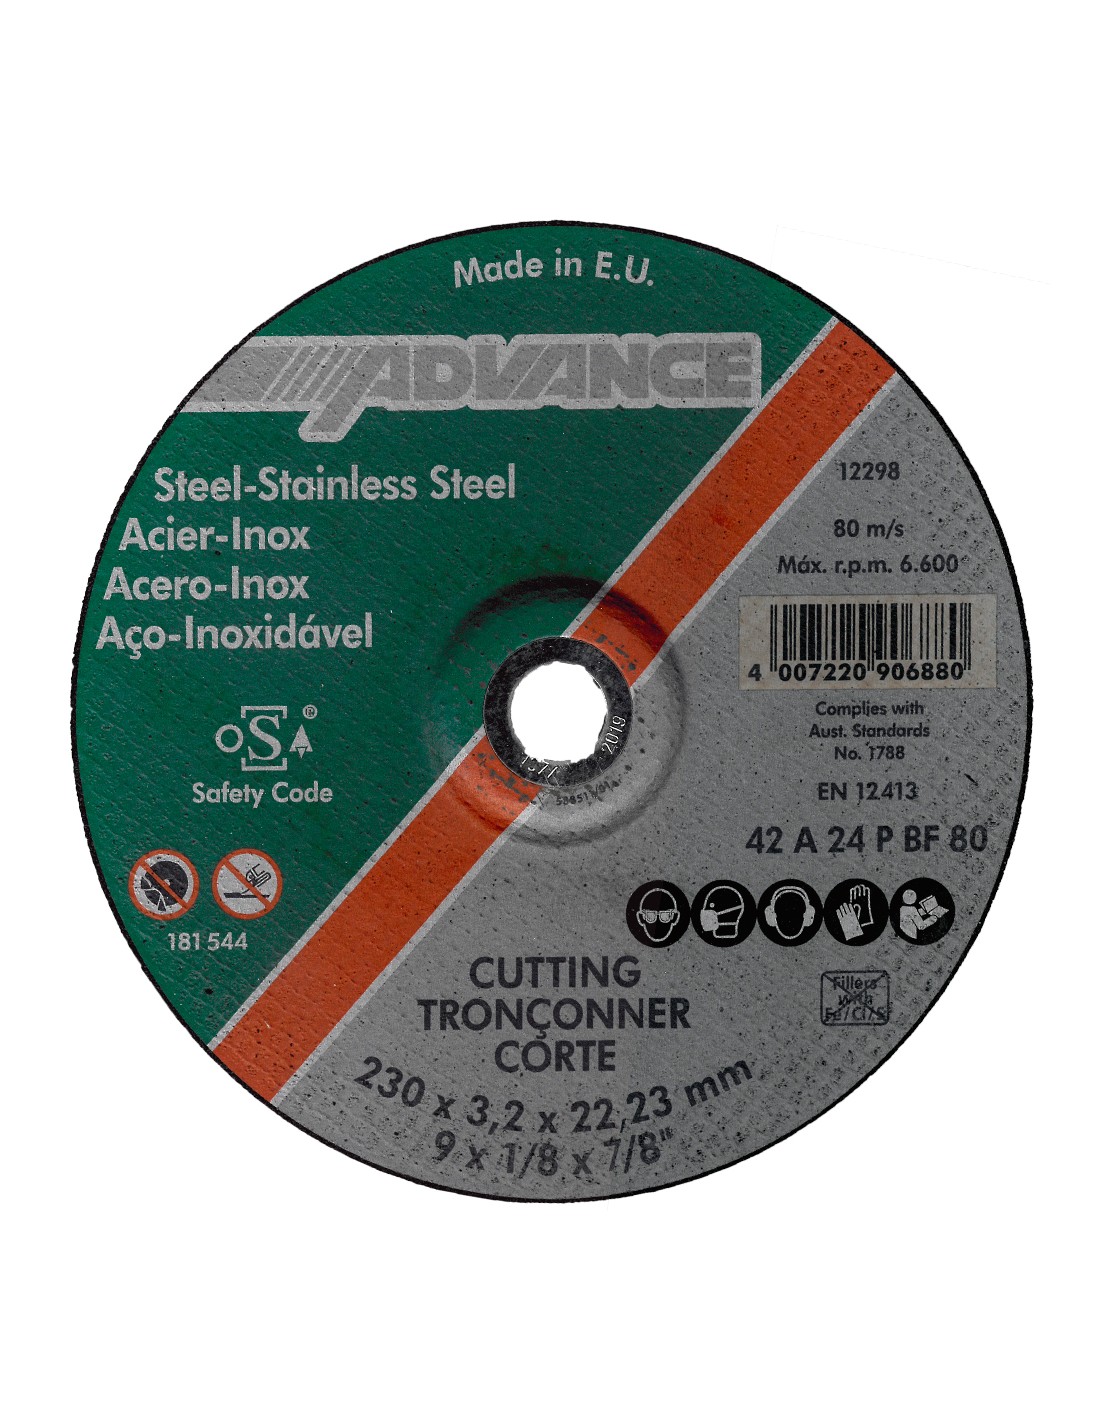 Disco corte acero-inox Advance 230x3,2